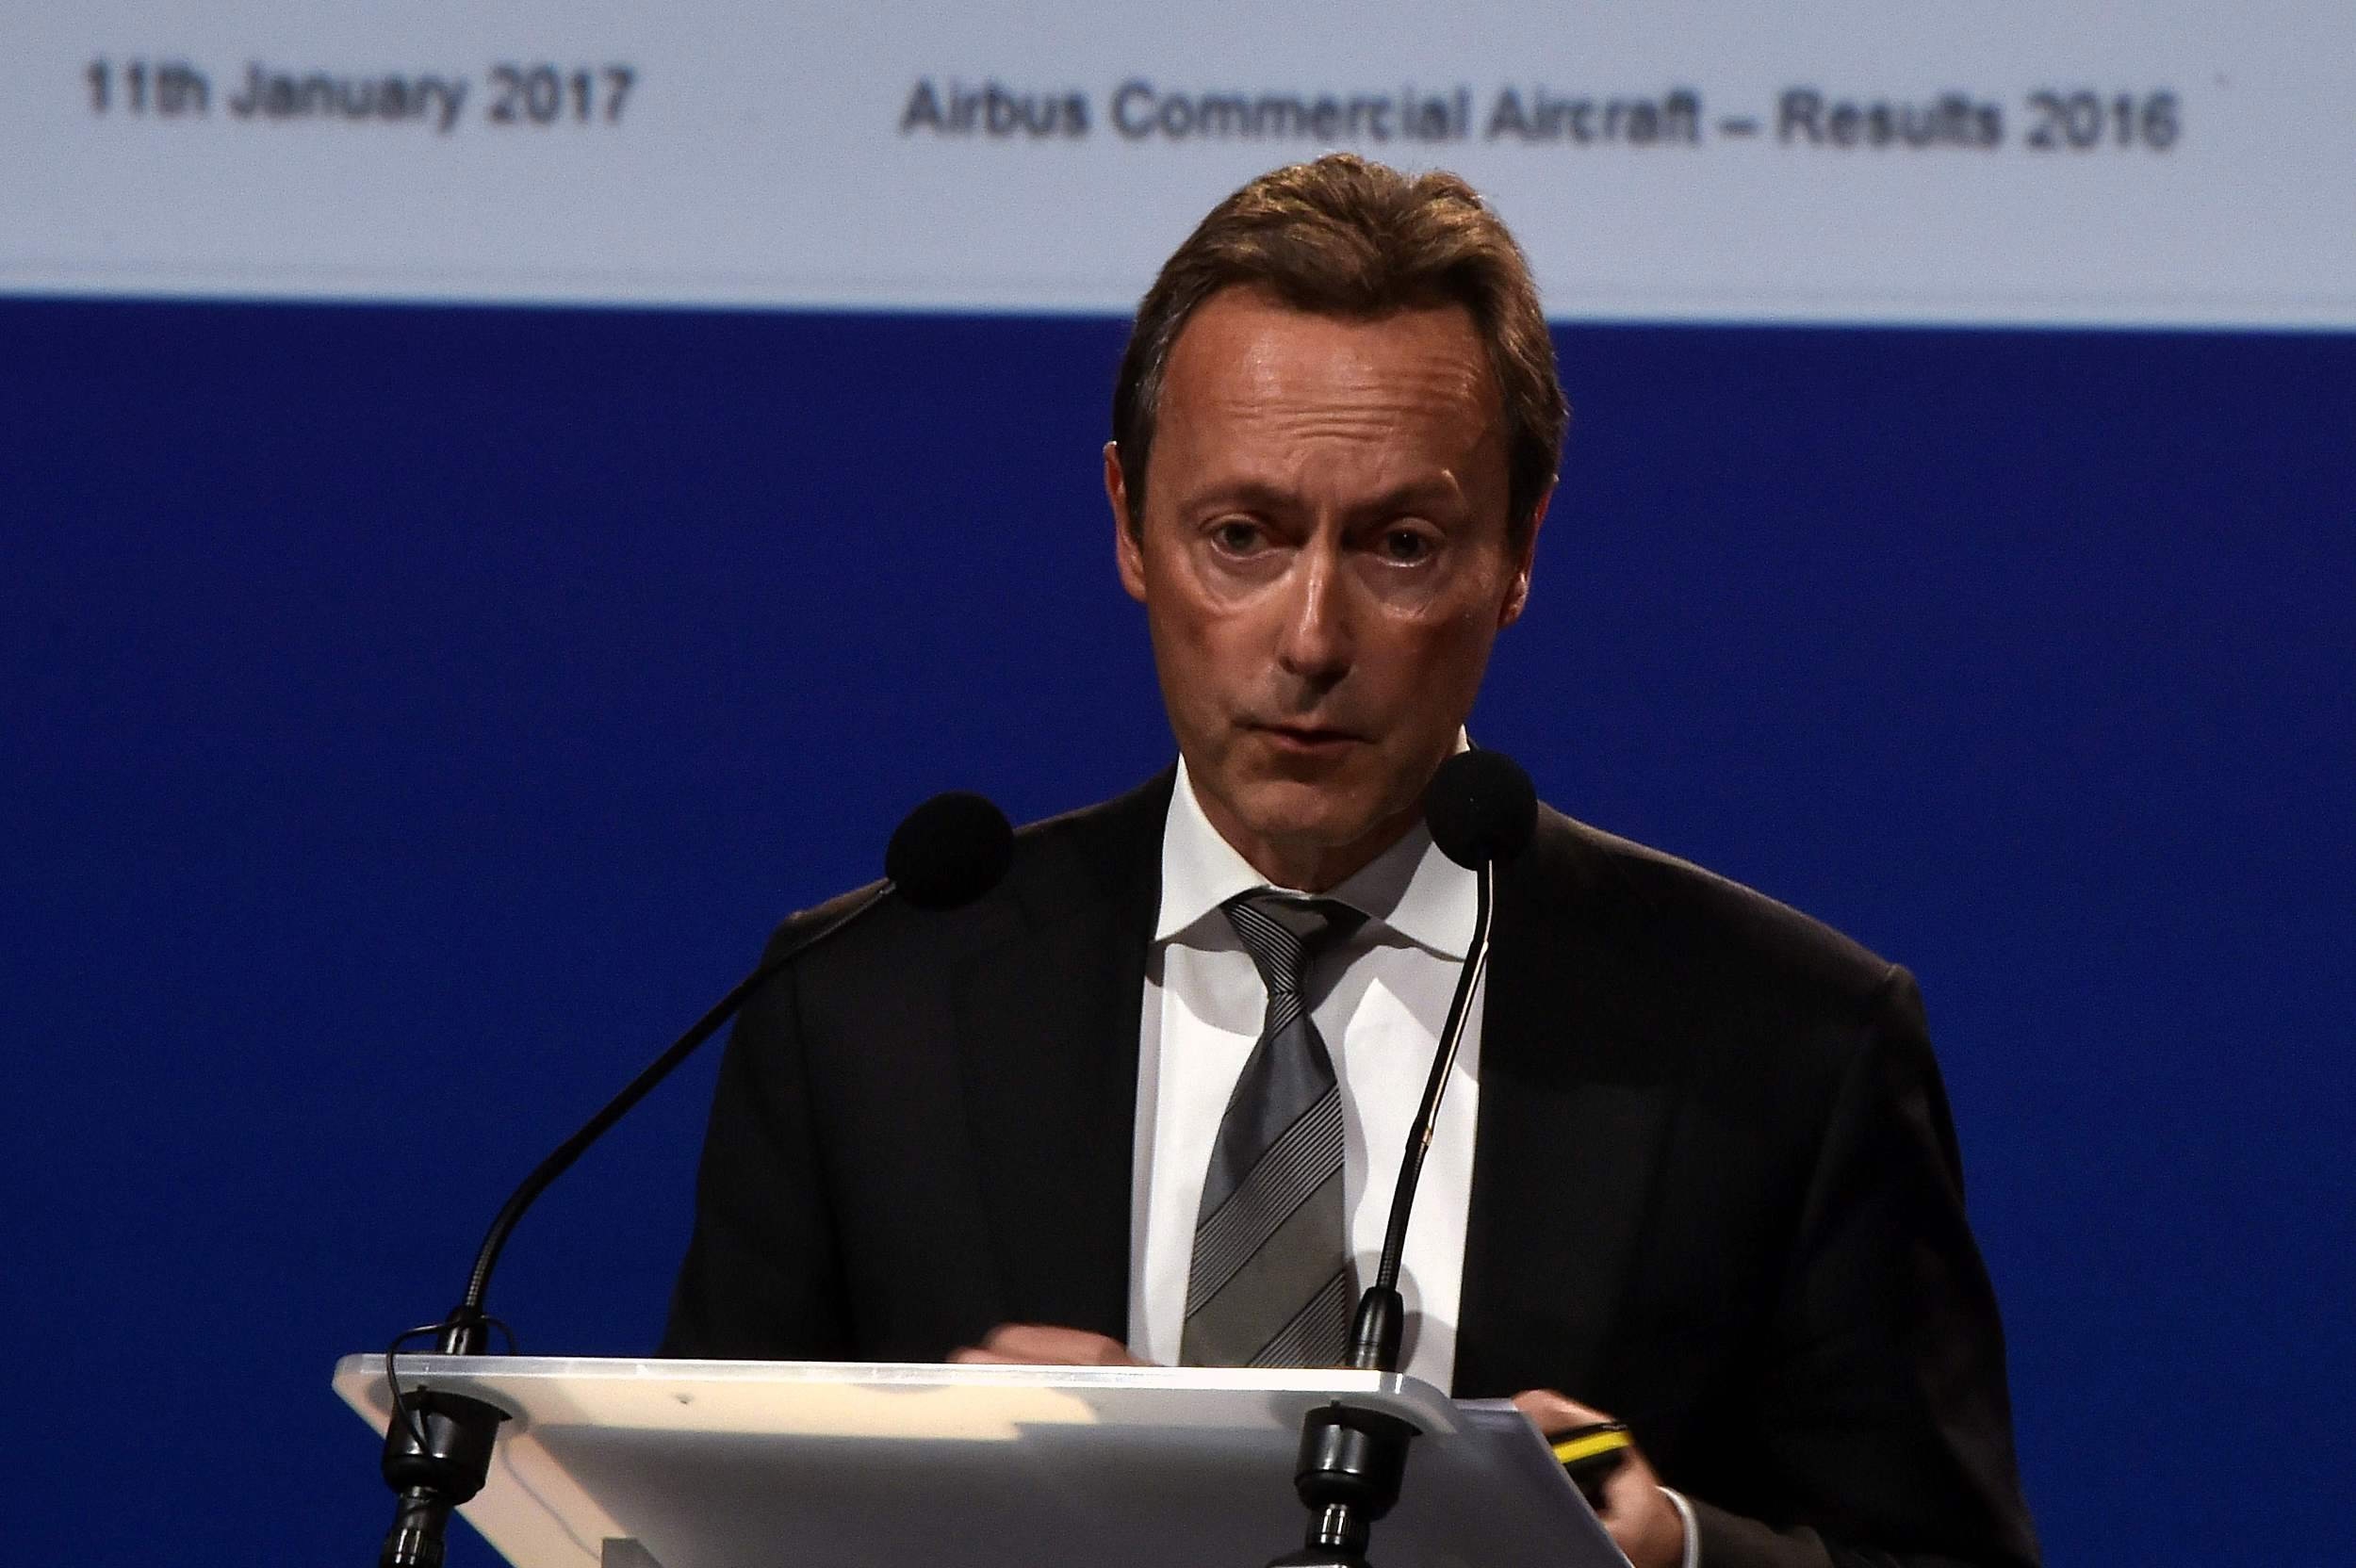 Airbus may look beyond UK unless Brexit demands met